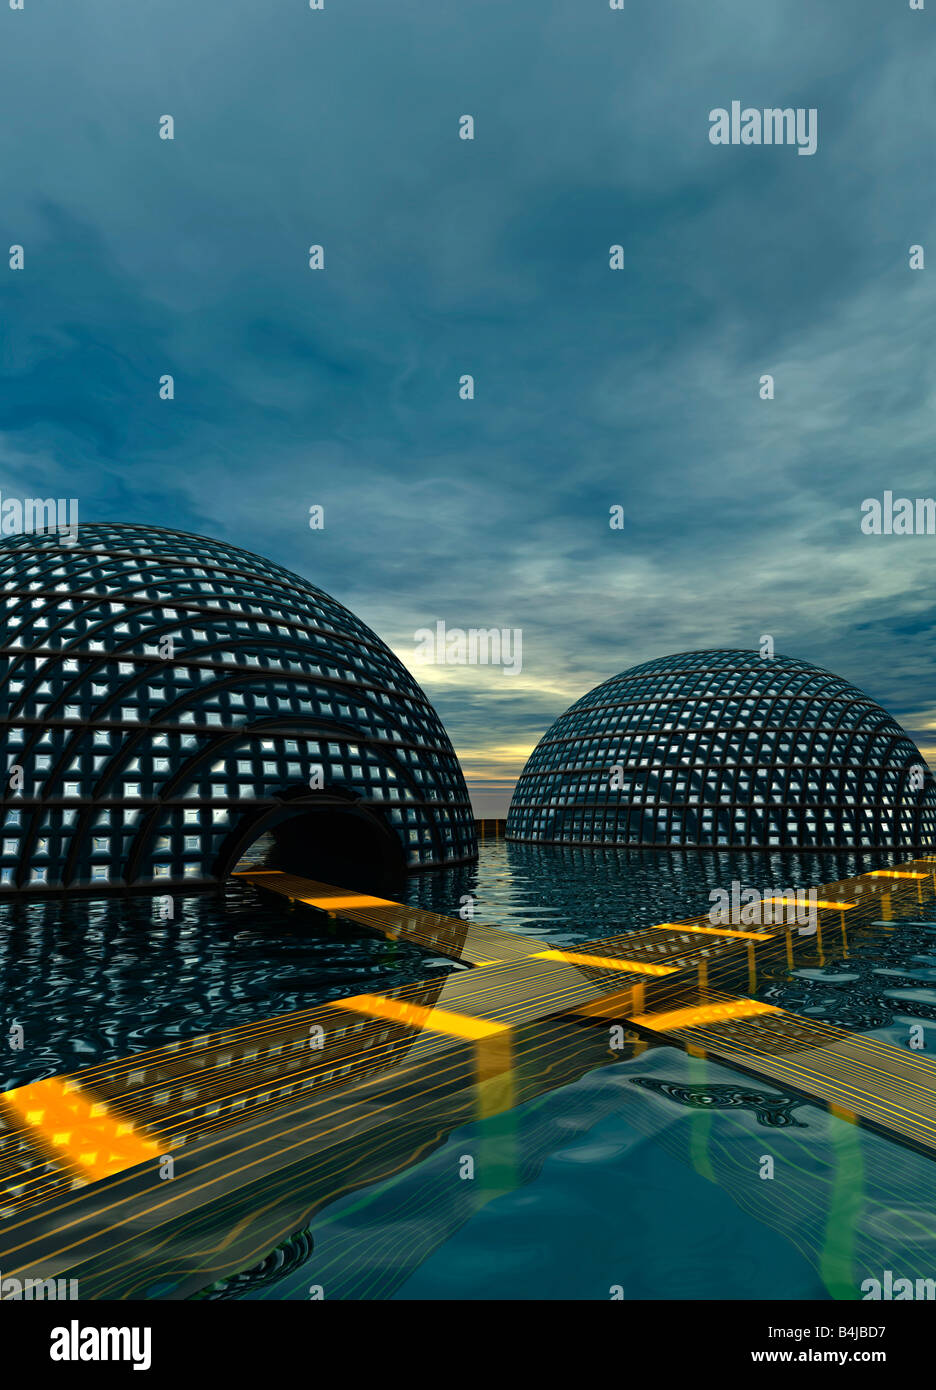 Illustration des structures en forme de dôme au-dessus de l'eau Banque D'Images